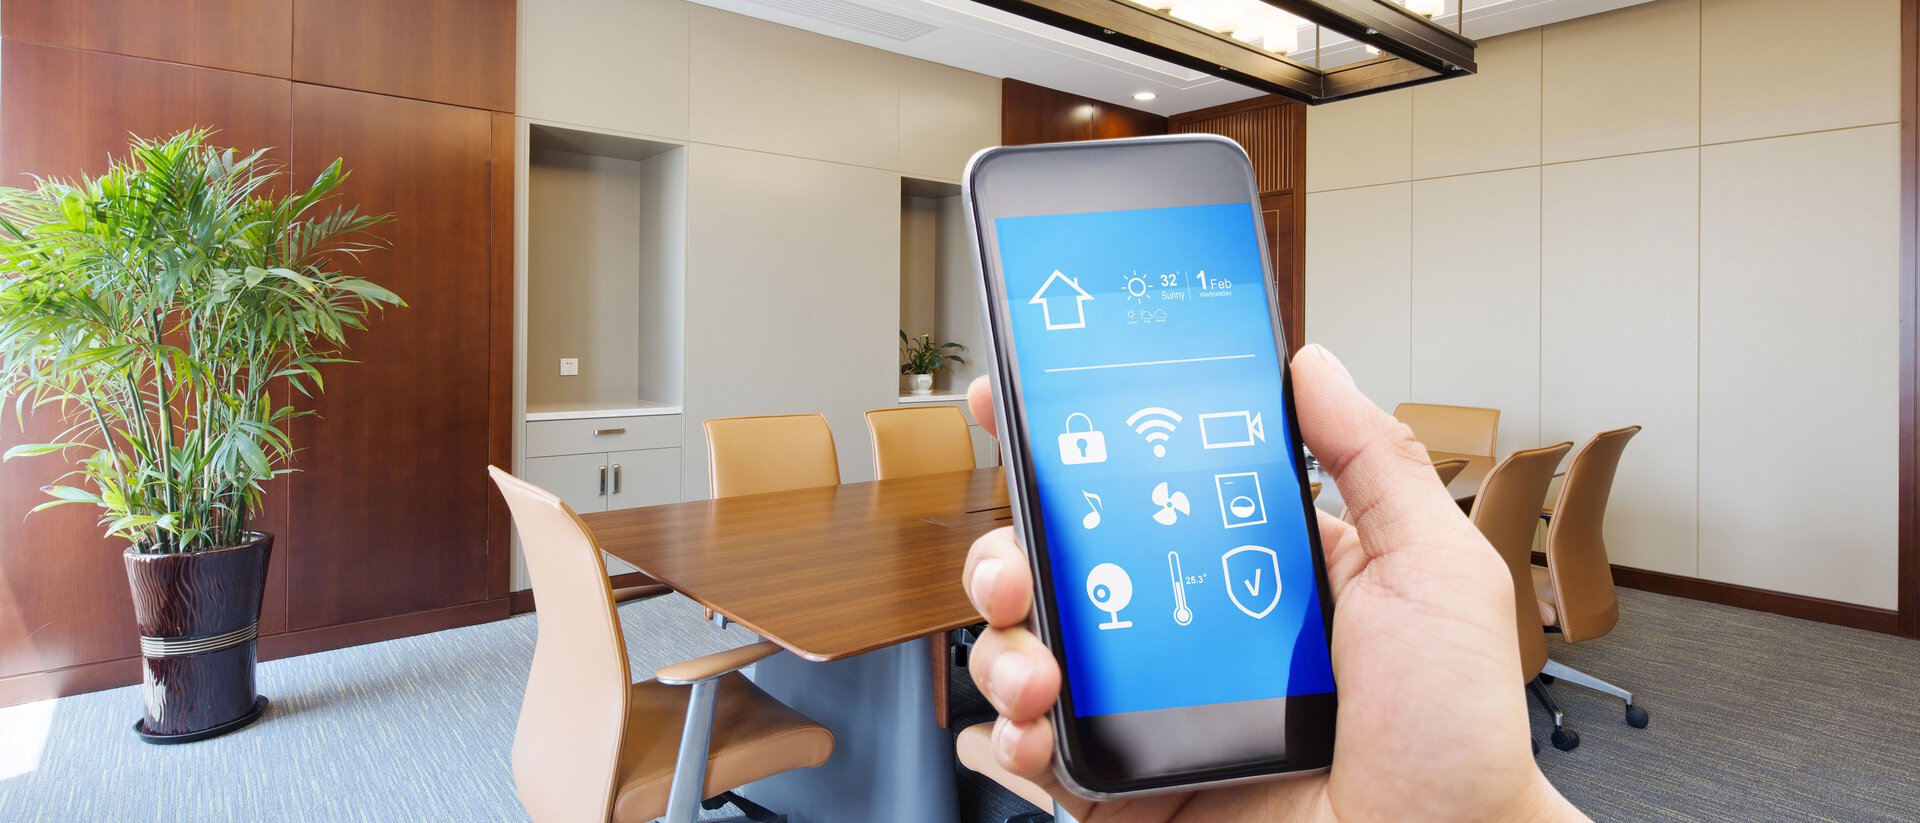 Ein Smartphone auf dem eine Workspace Management App angezeigt wird, im Hintergrund ein Konferenzraum